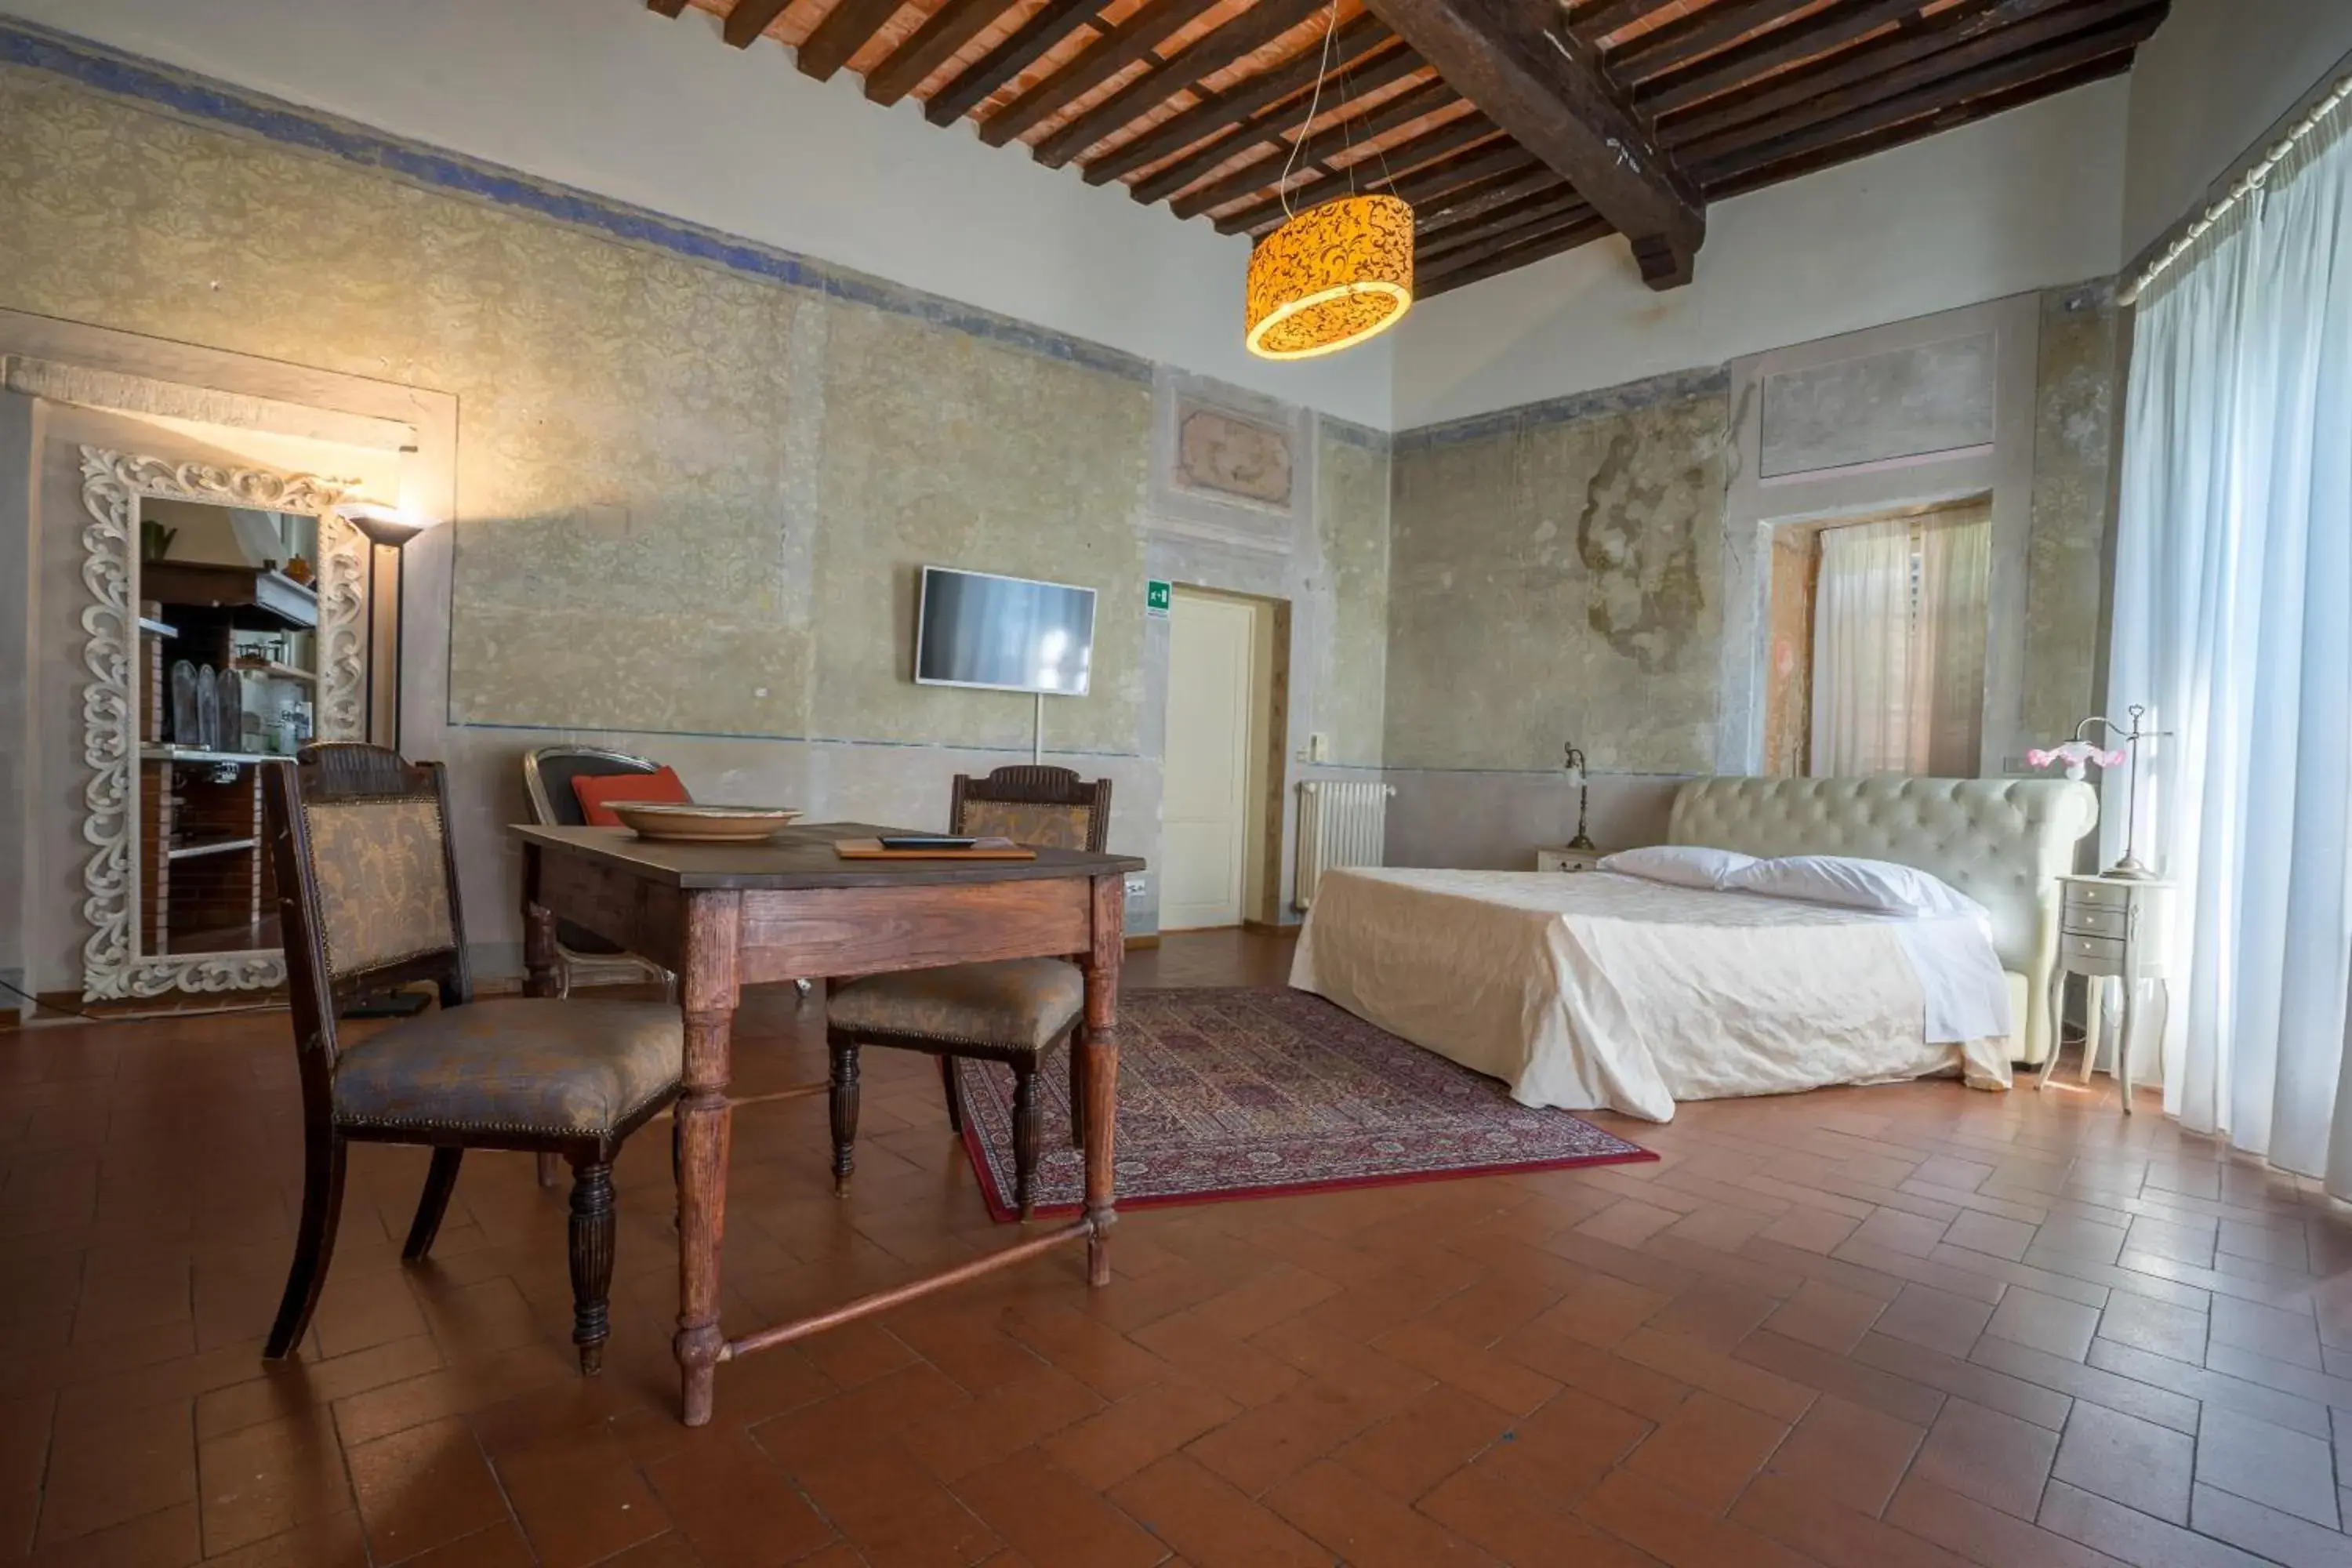 Photo of the whole room in Hotel Villa Sermolli